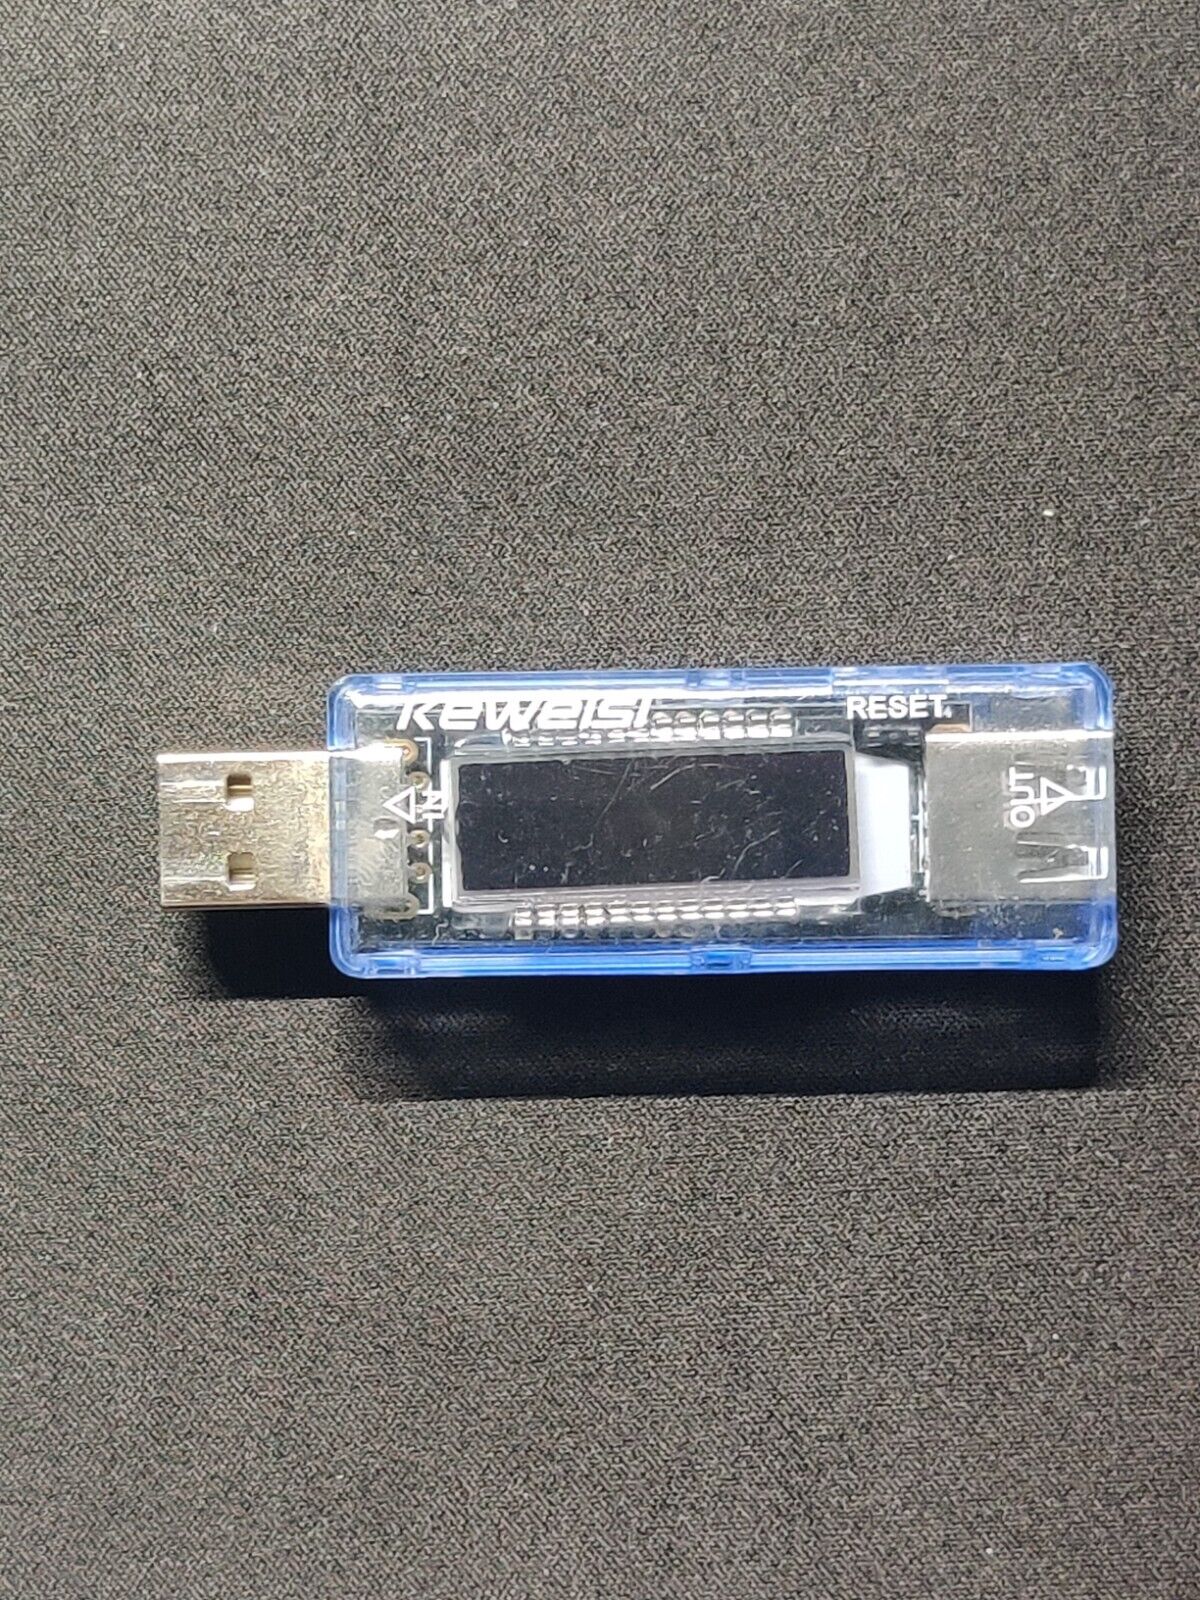 KEWEISI KWS-V20 USB 0-3A Current 4-20V Voltage Meter Capacity Tester